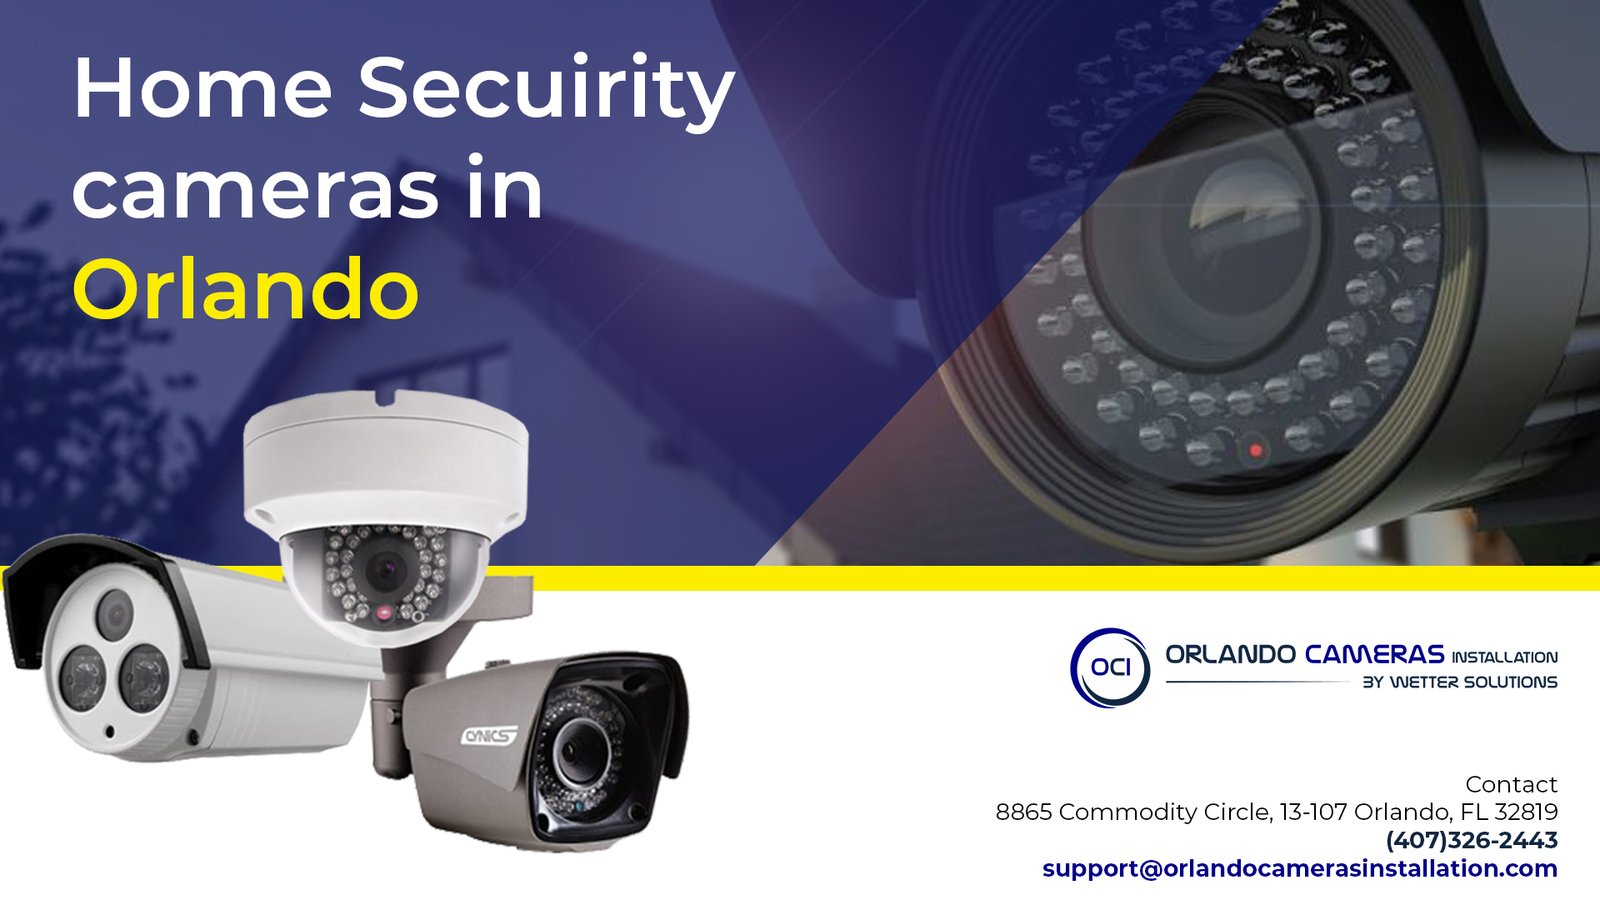 Home security cameras in Orlando